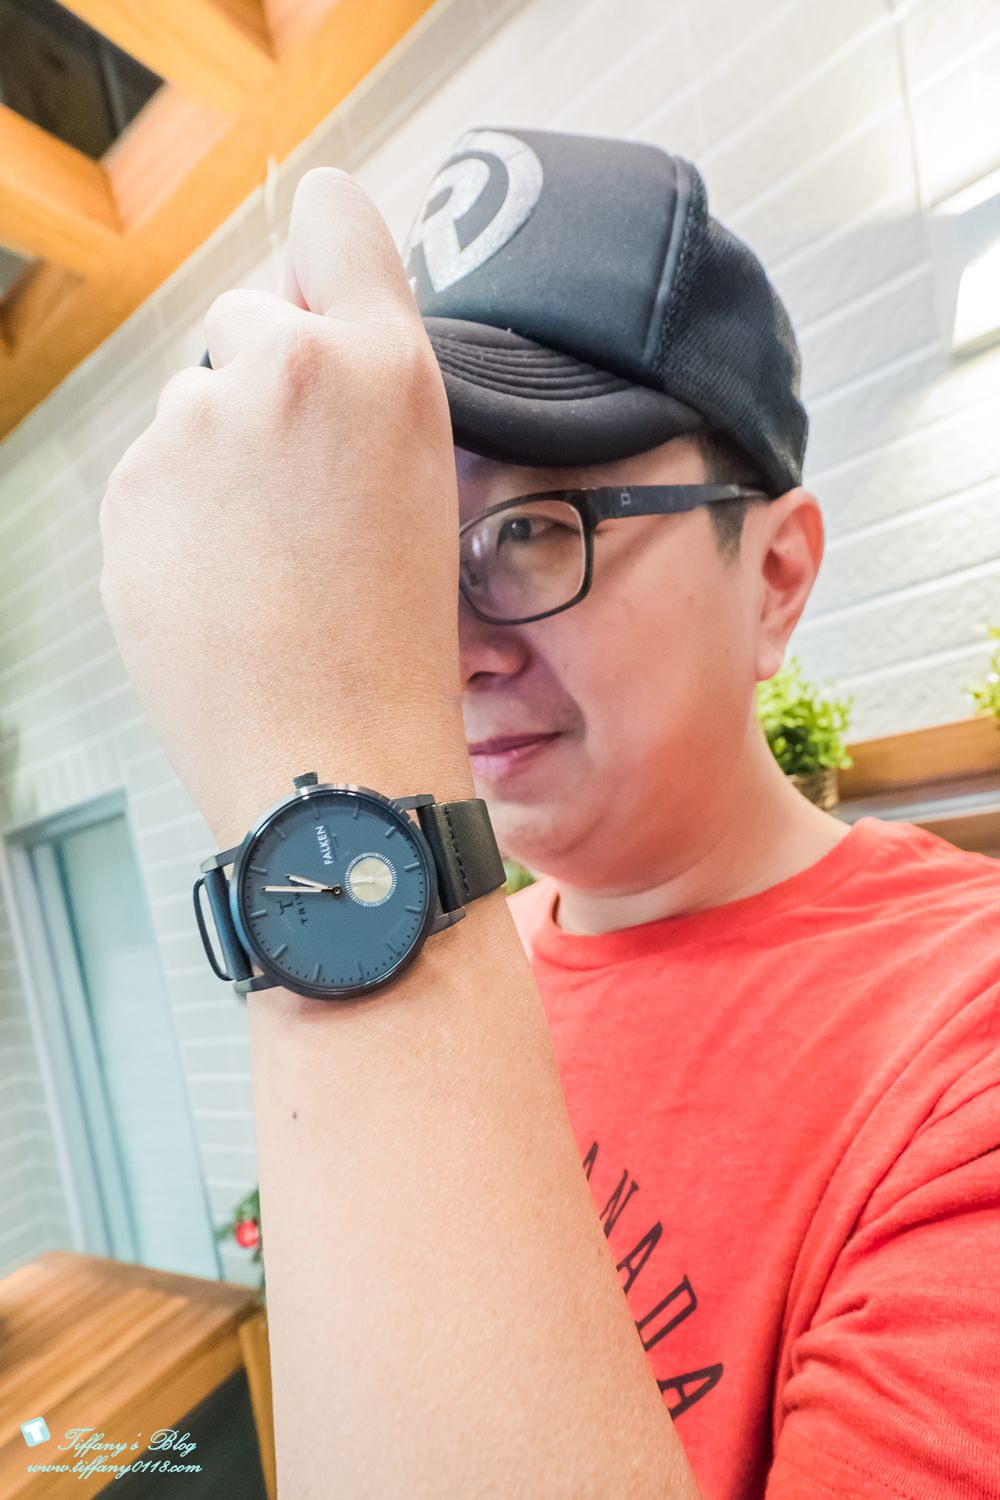 [手錶推薦]TRIWA手錶/北歐瑞典腕錶品牌/情侶對錶時尚簡約又實戴(內有粉絲折扣碼)